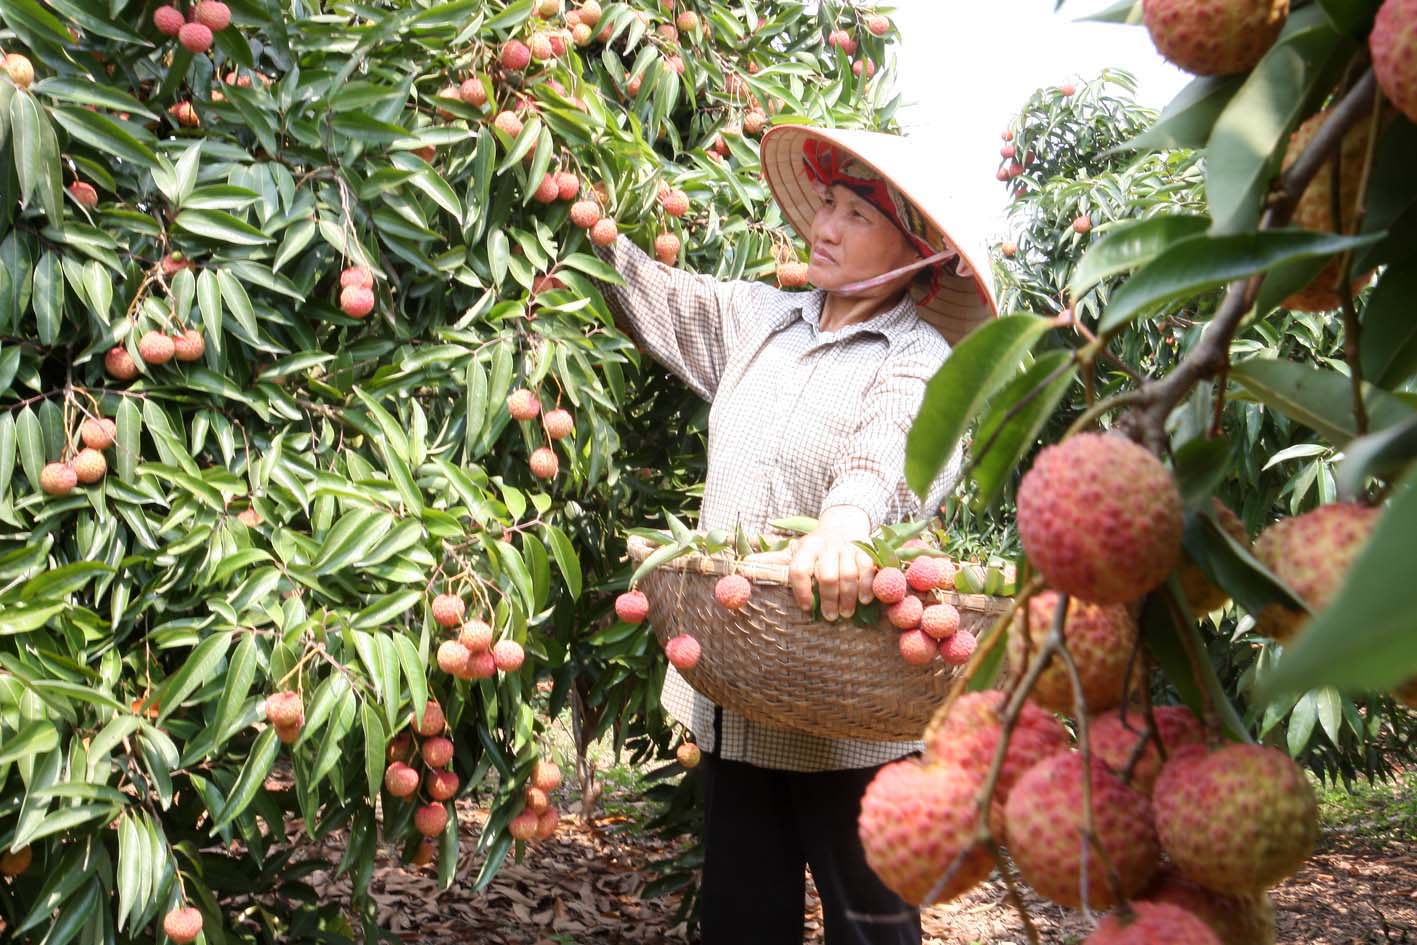 Kết quả hình ảnh cho Xung quanh ‘hiện tượng’ xuất khẩu rau quả Việt